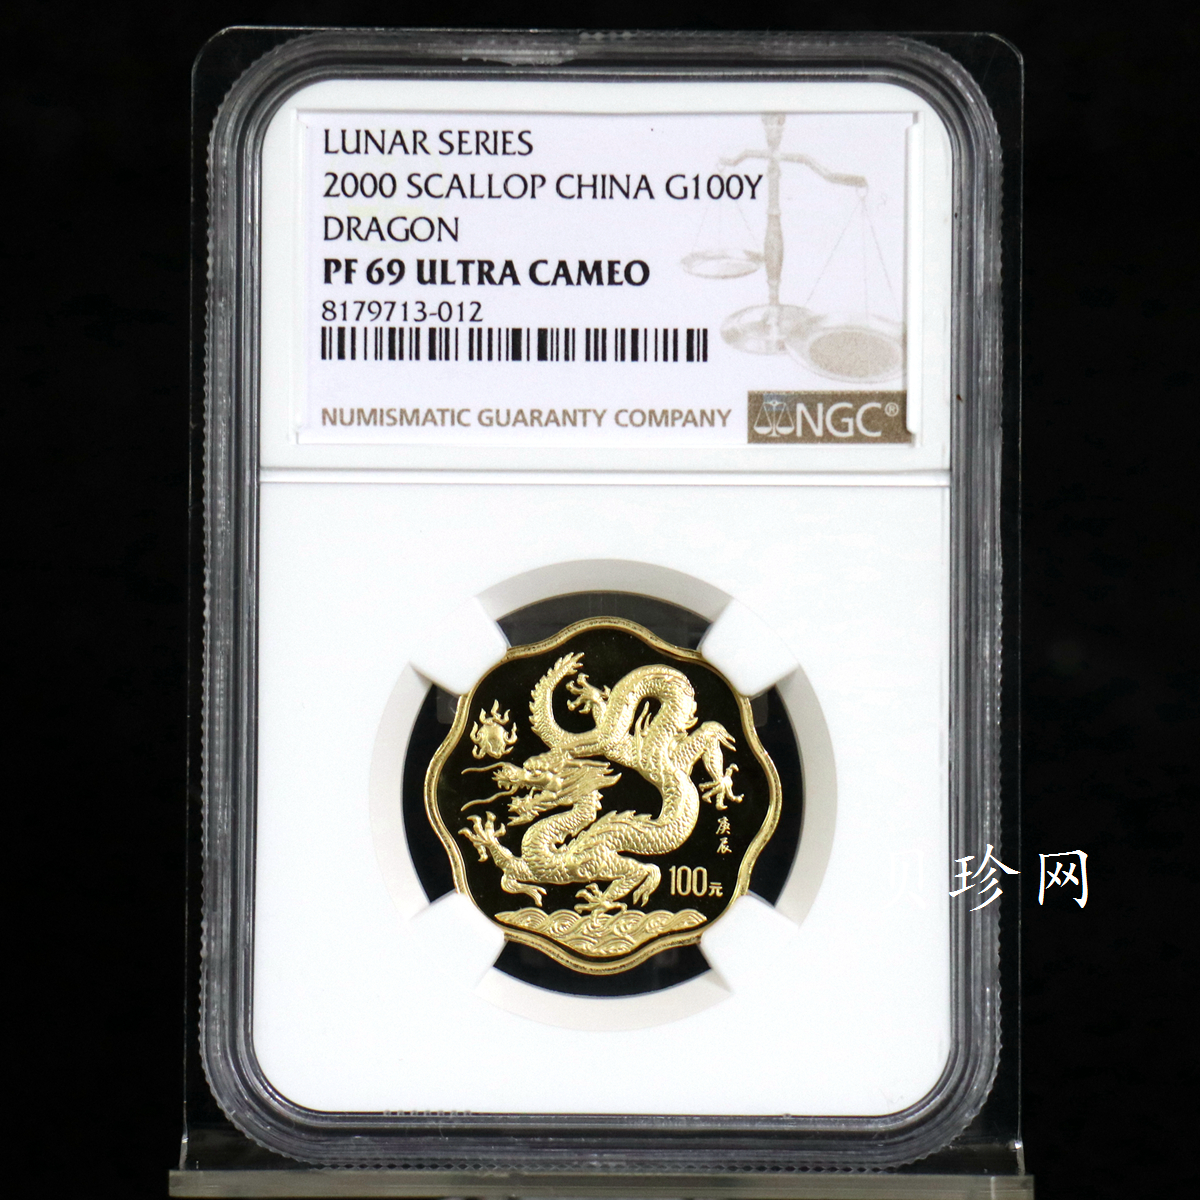 【000303】2000中国庚辰（龙）年金银纪念币-神龙图1/2盎司梅花精制金币